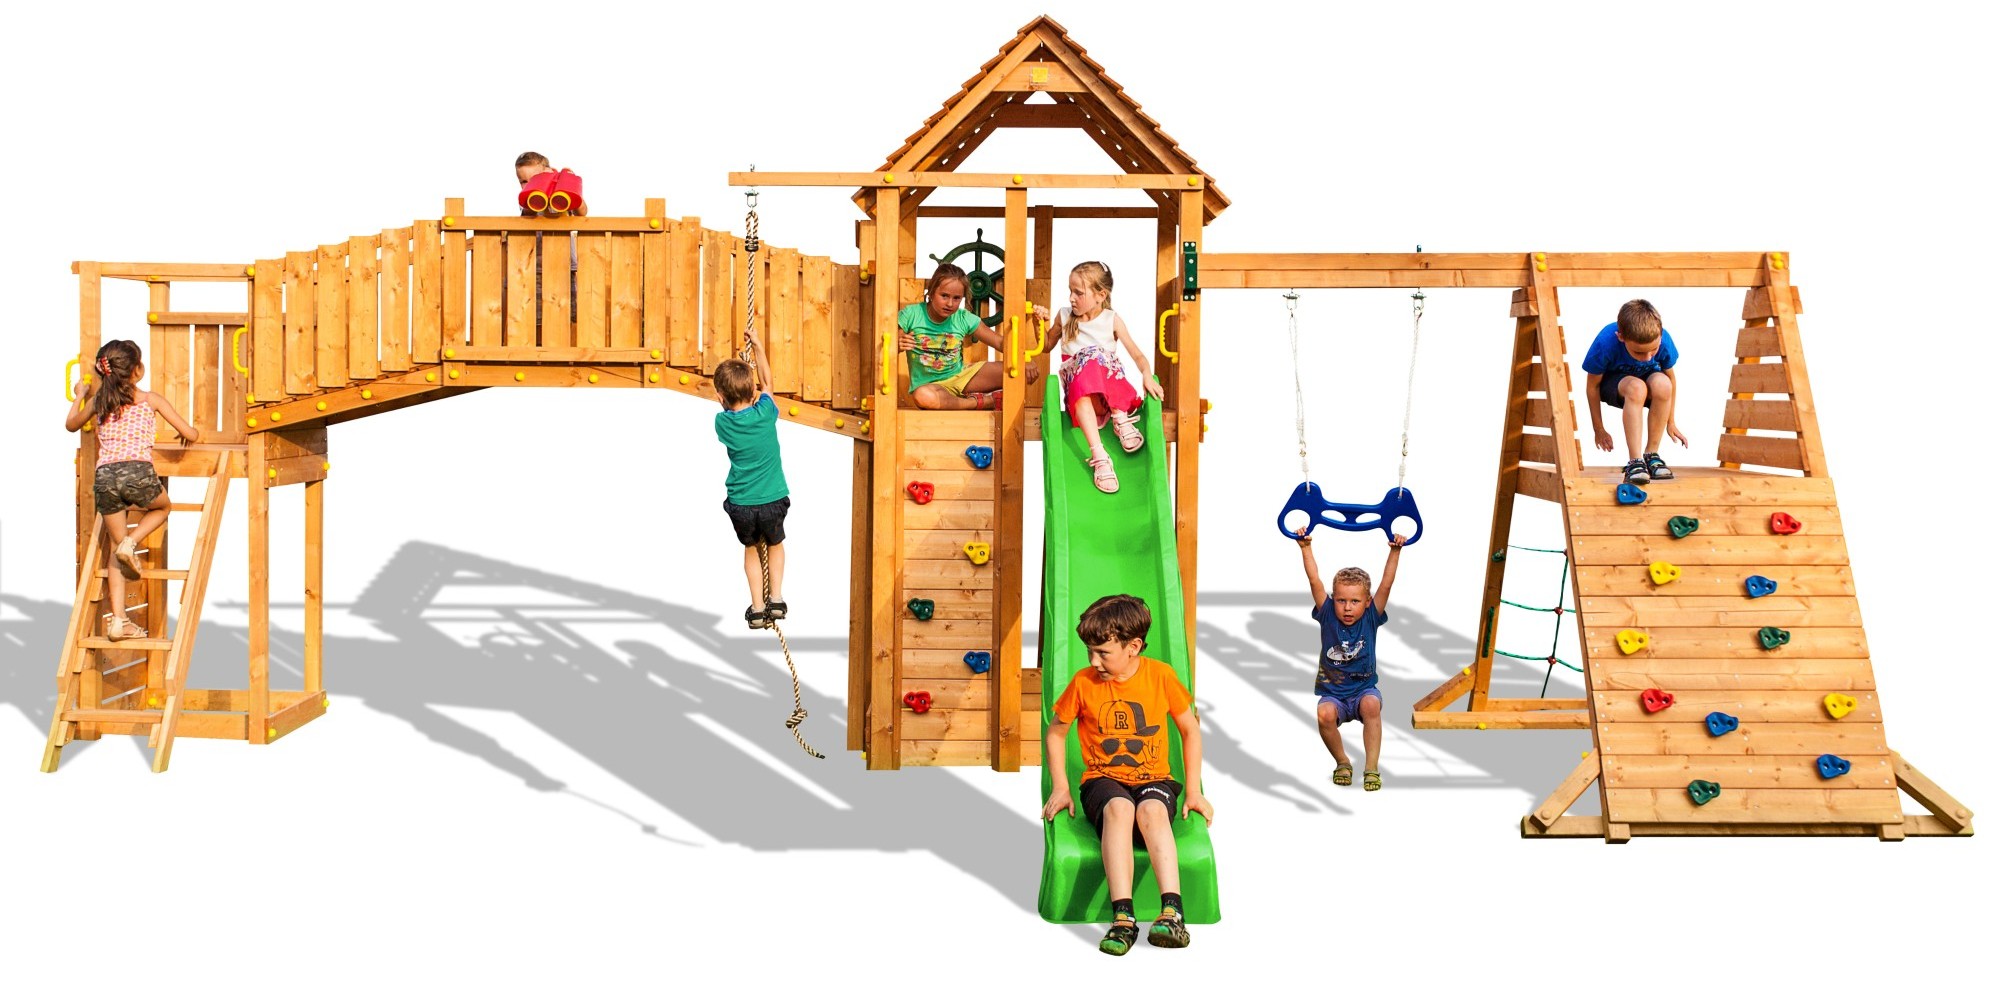 Plac zabaw drewniany XXL Fun Gym domek, hutawka, zjedalnia, cianka i lina wspinaczkowa, most, drabinki